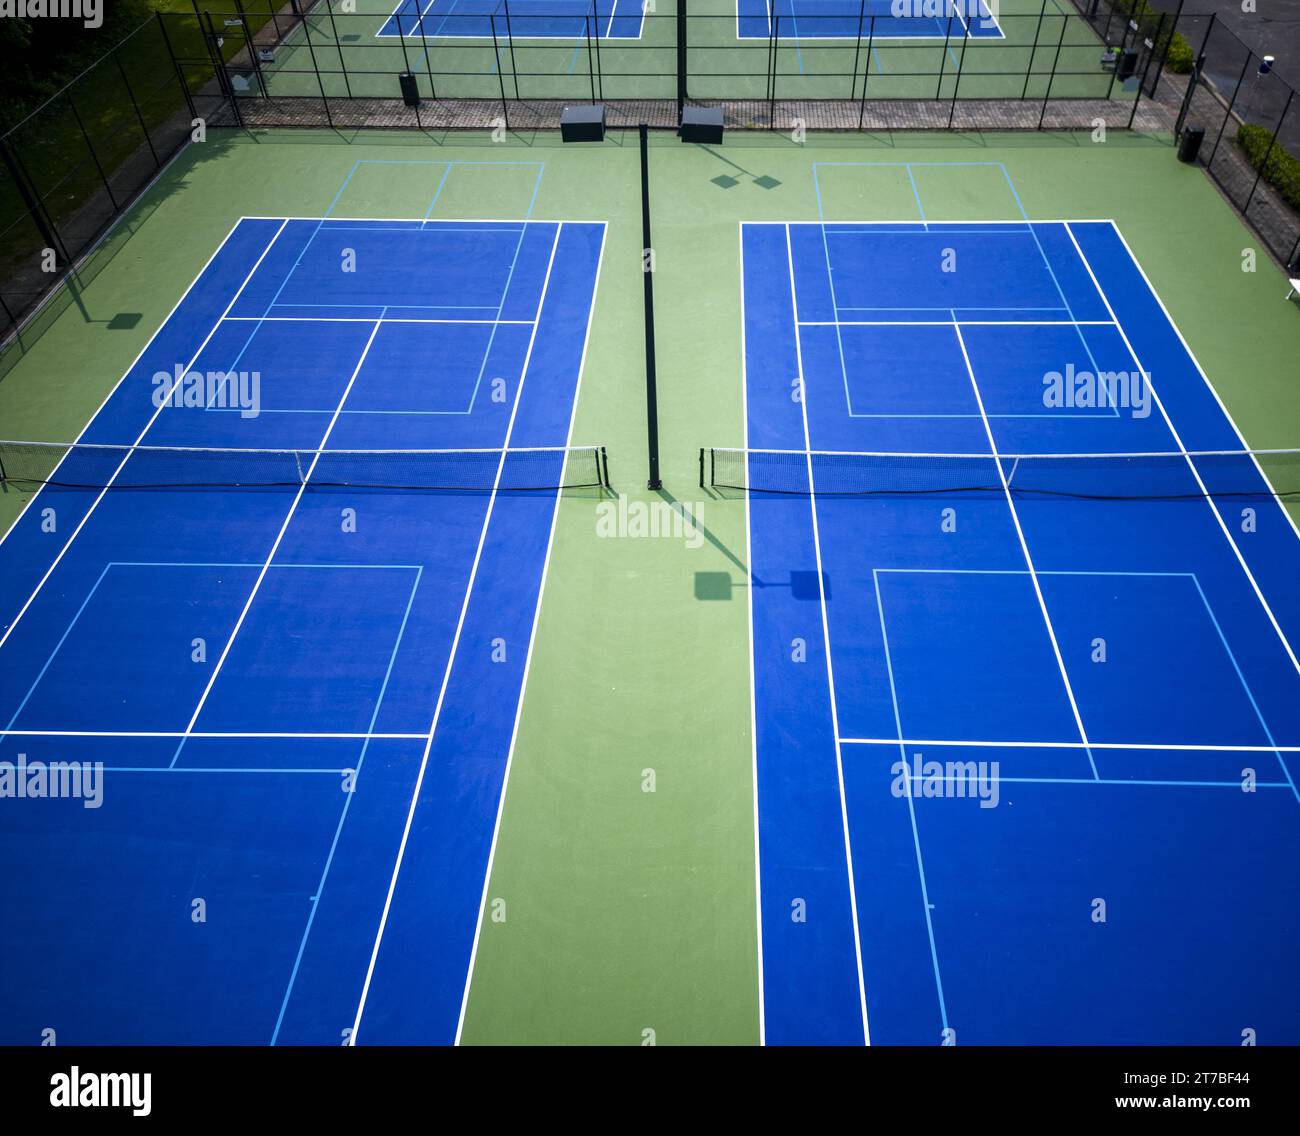 Une vue de drone regardant vers le bas les courts de pickleball bleus de tennis bordés de bleu clair pour le pickleball avec des lumières. Banque D'Images